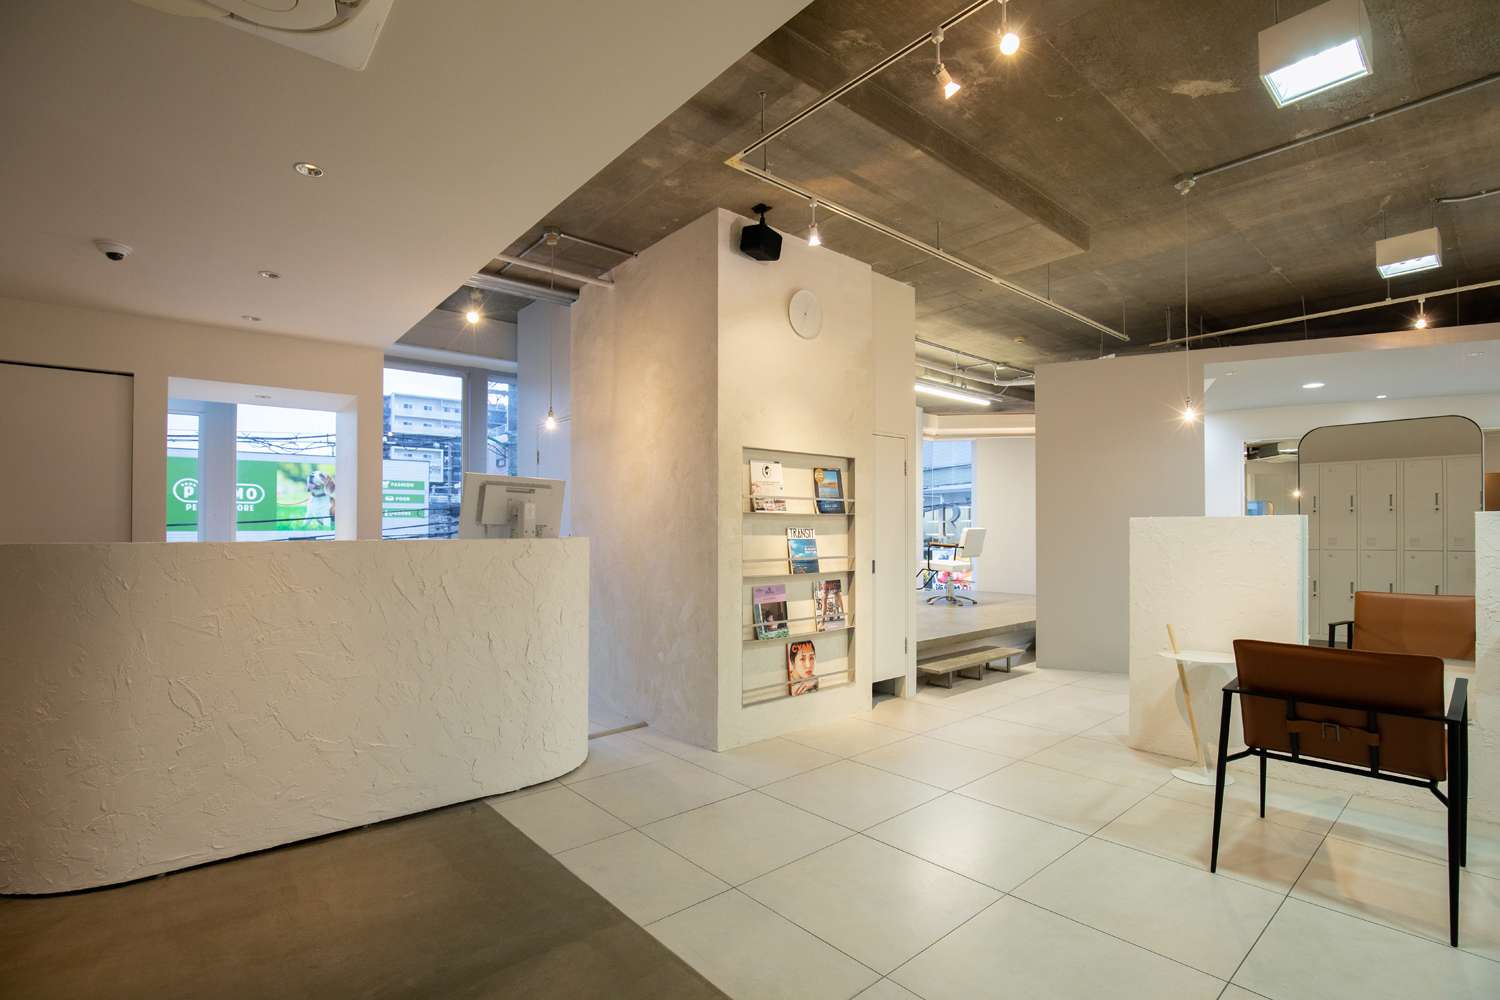 そこにあるべき最適な【場】を求めて、最良な【空間】を目指して。茨木市でおしゃれな店舗設計、店舗デザイン、空間デザイン、内装デザインはasazu design office